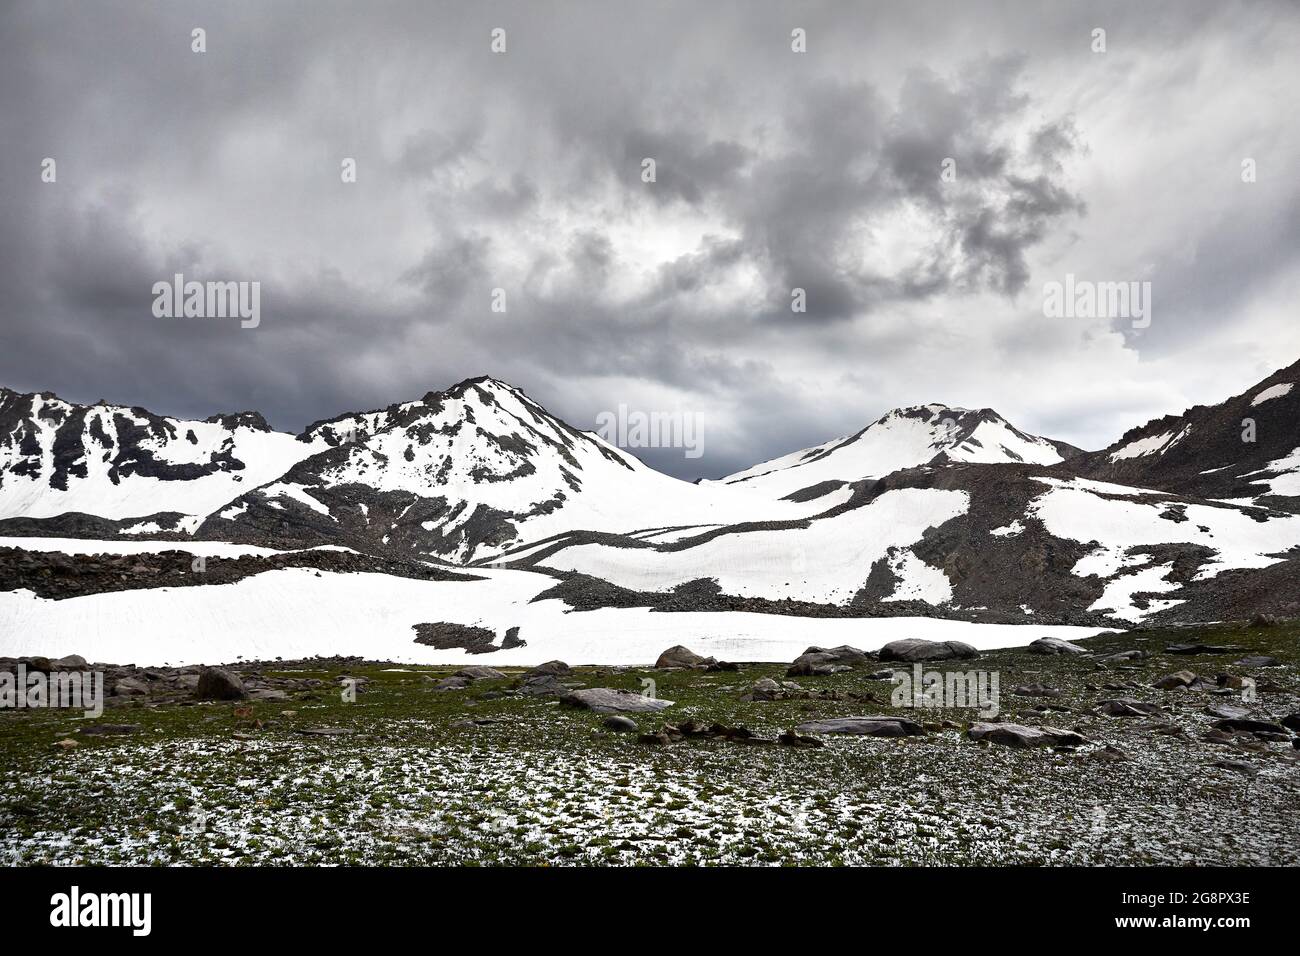 Splendido scenario della valle montana con la cima della neve e contro il cielo scuro. Concetto esterno ed escursionistico Foto Stock